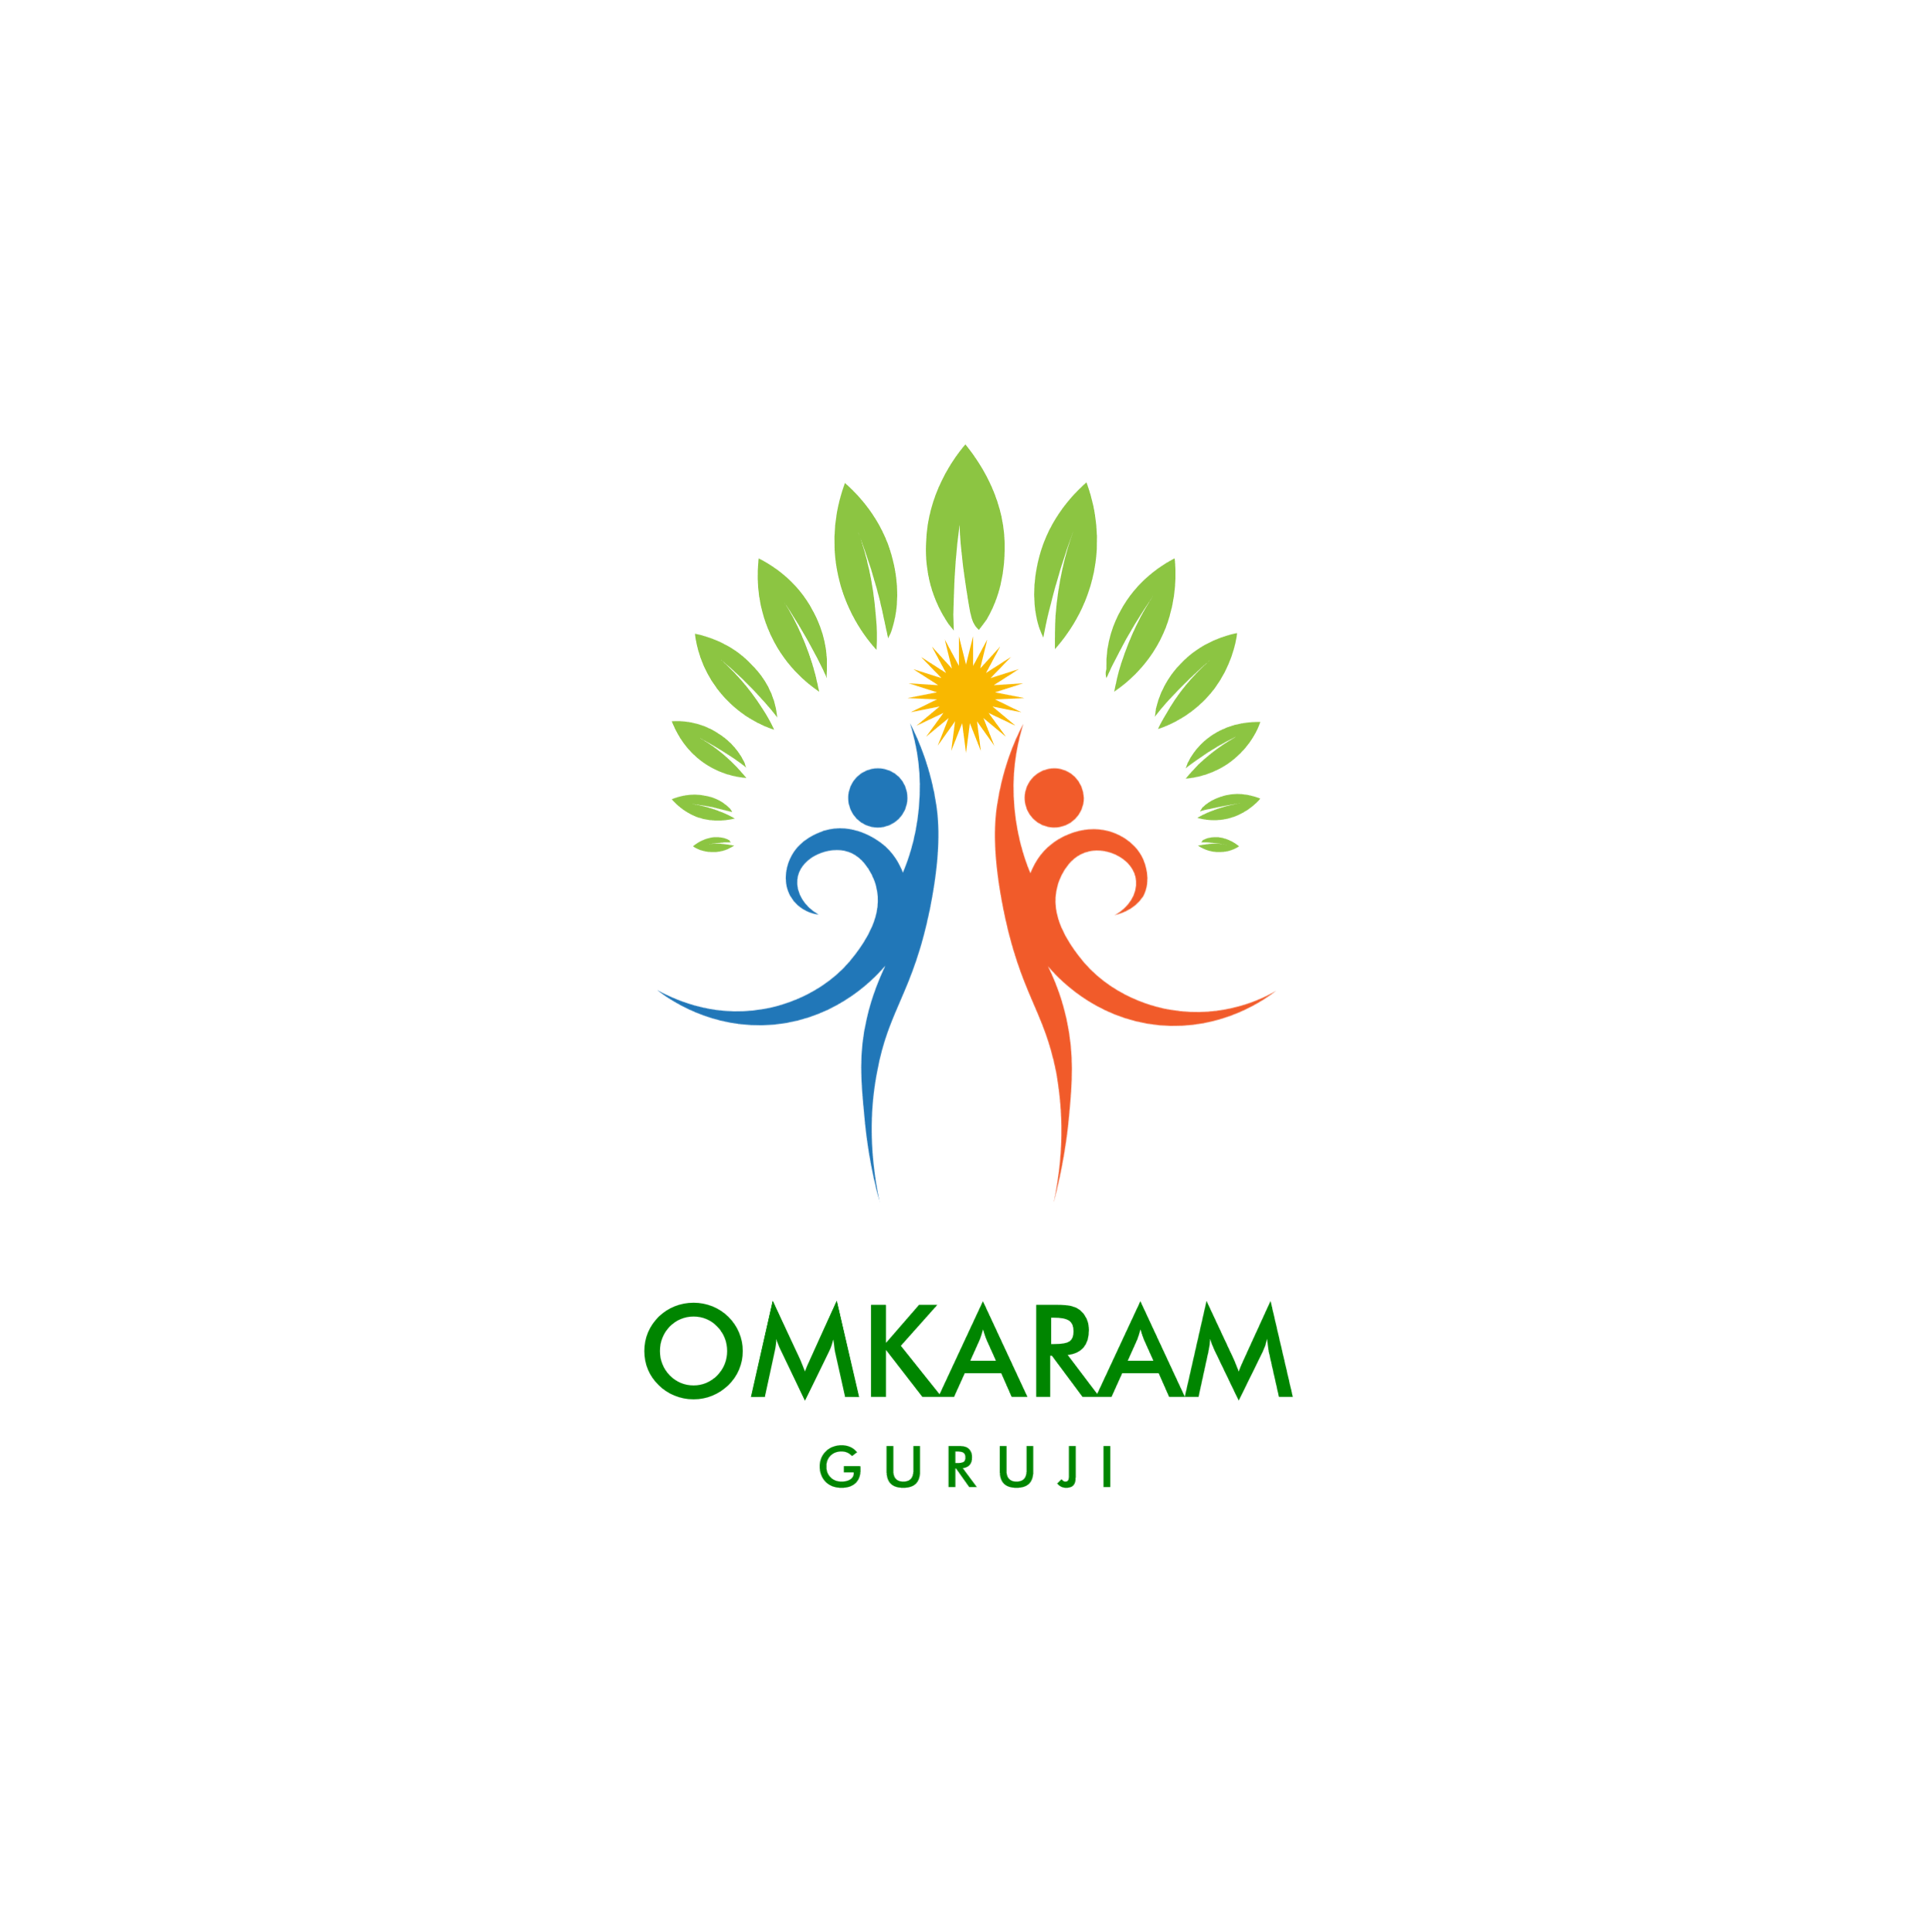 #Omkaram Guruji